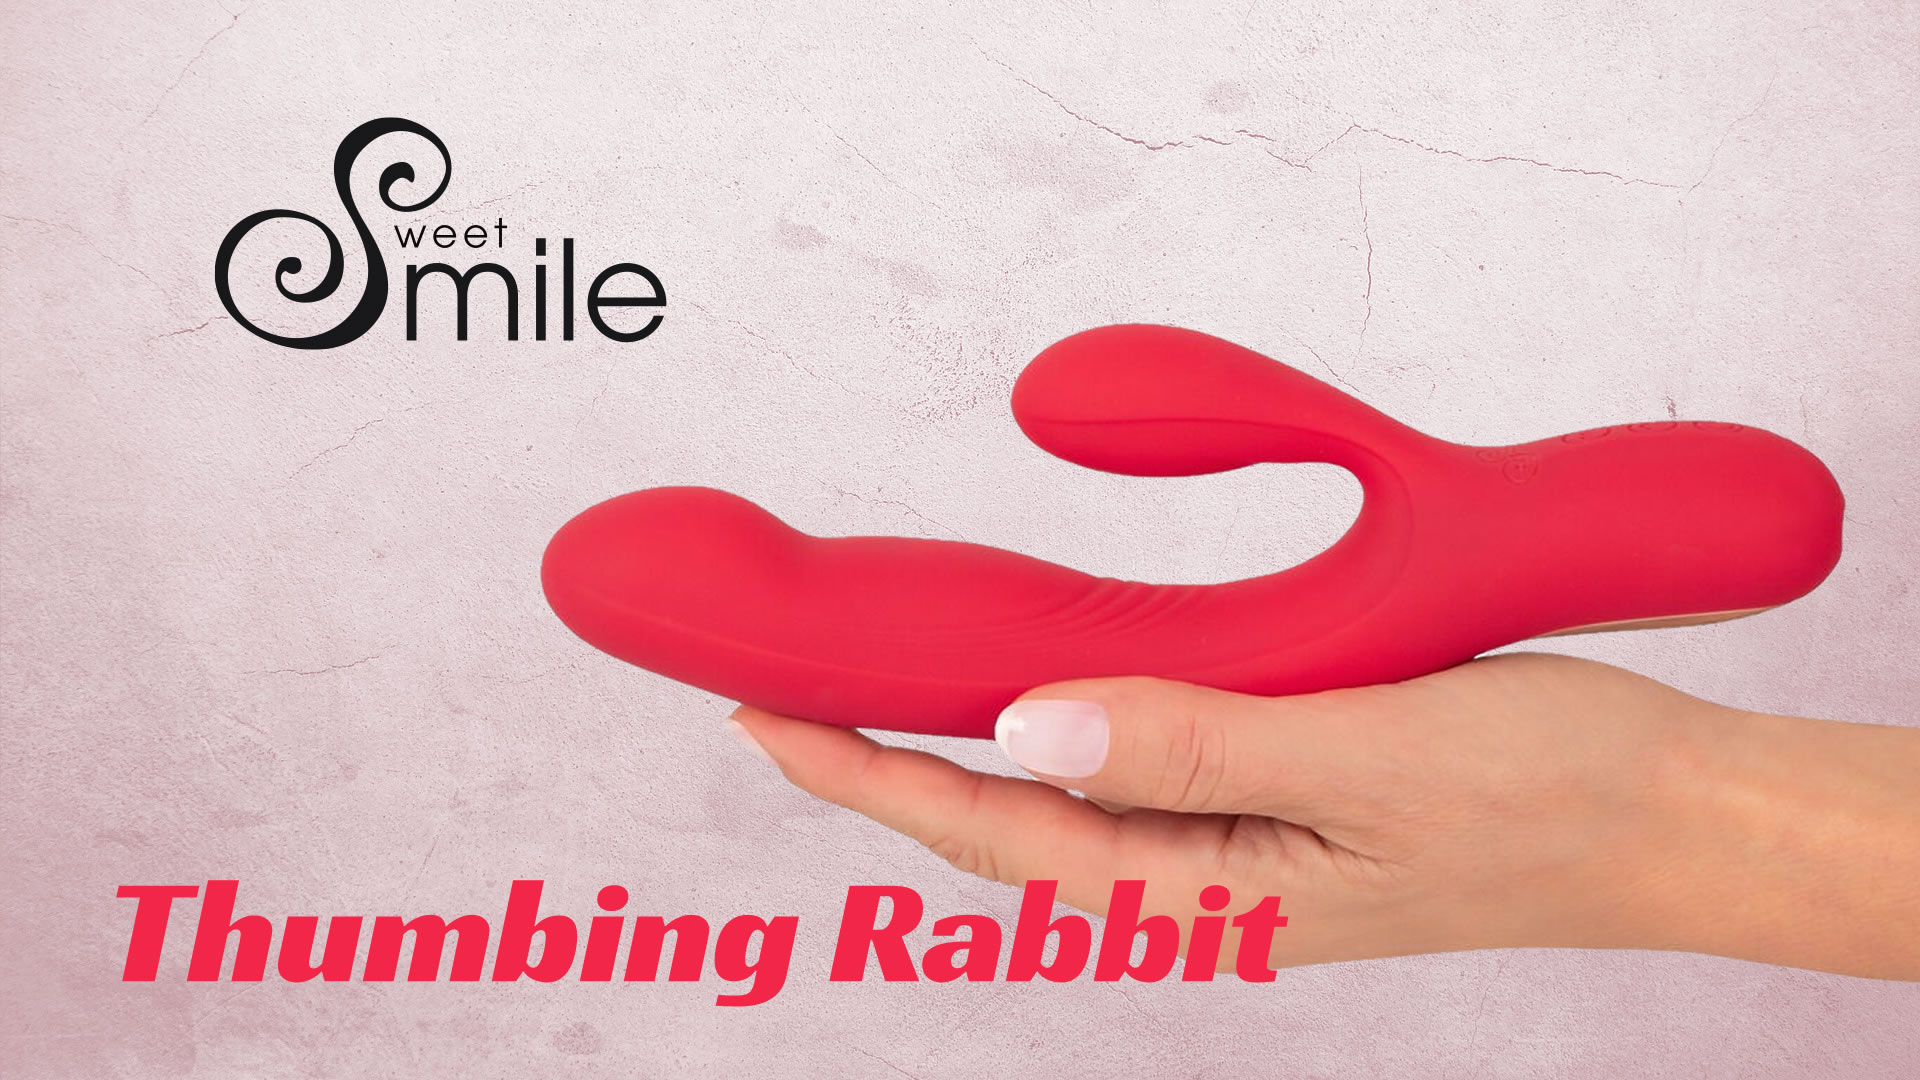 Sweet Smile Thumbing Rabbit Vibrator med Dunke Funktion